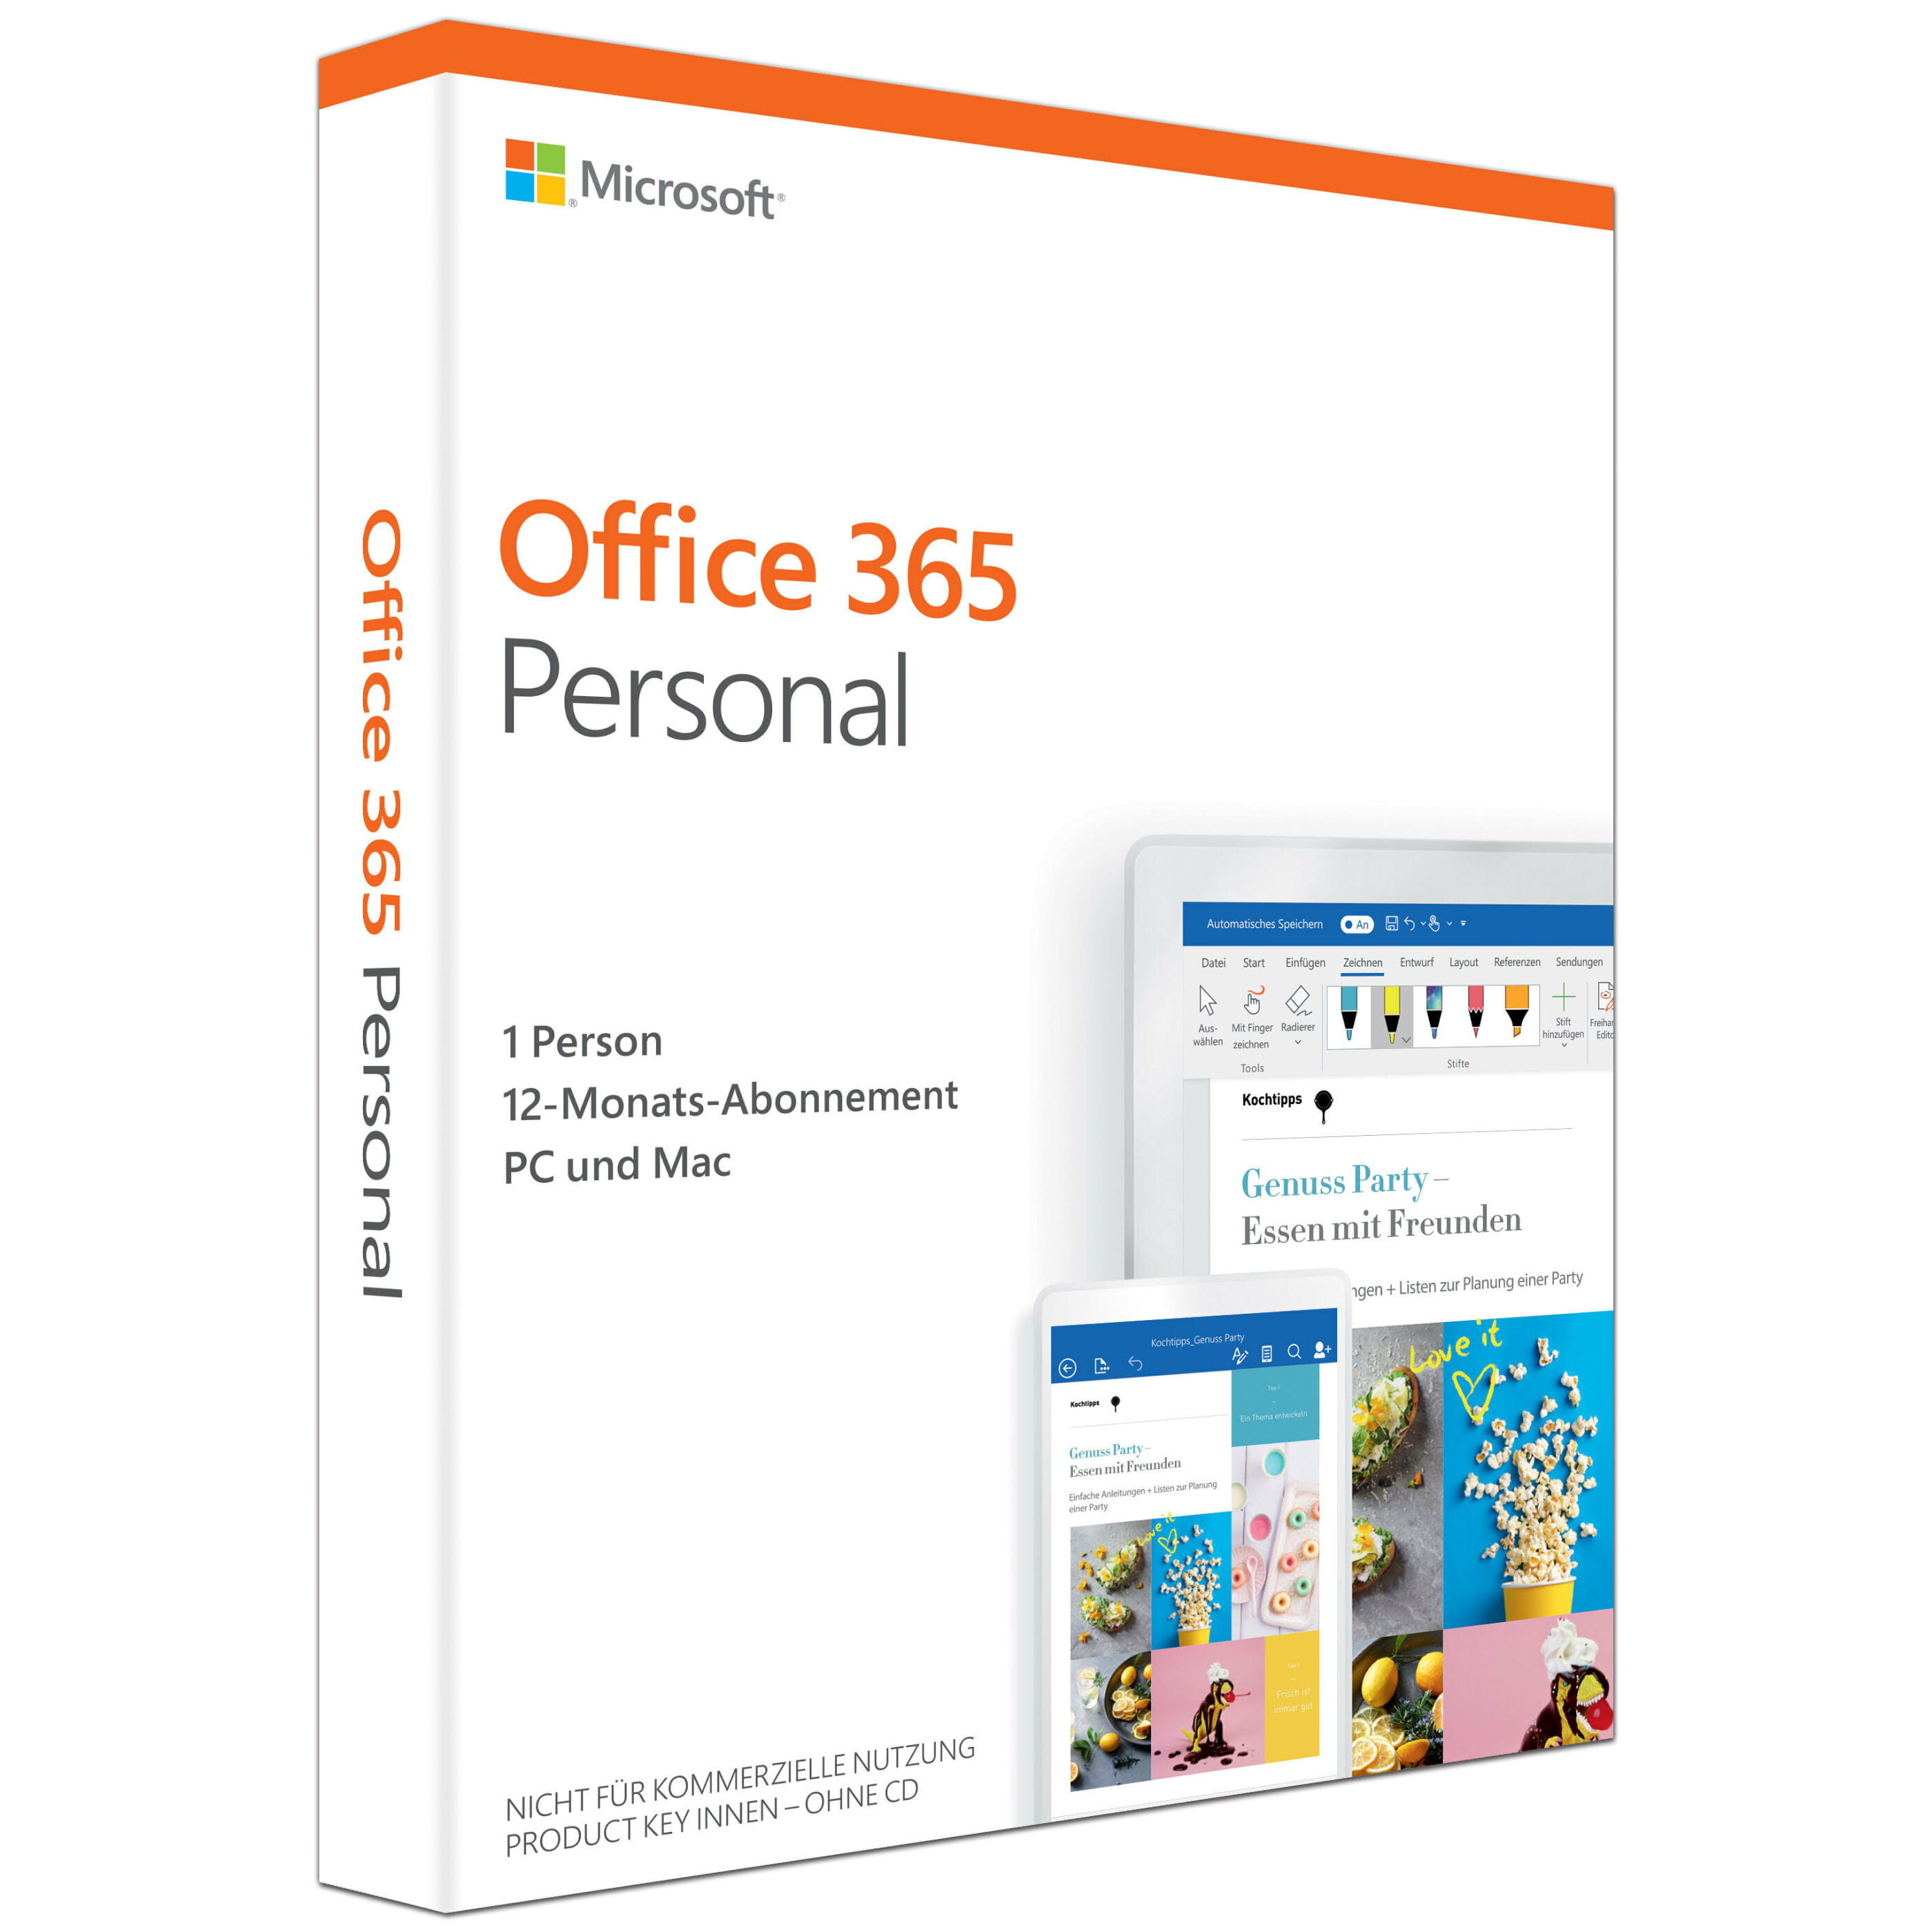 Office 365 Pro Plus: lo strumento per l'impresa